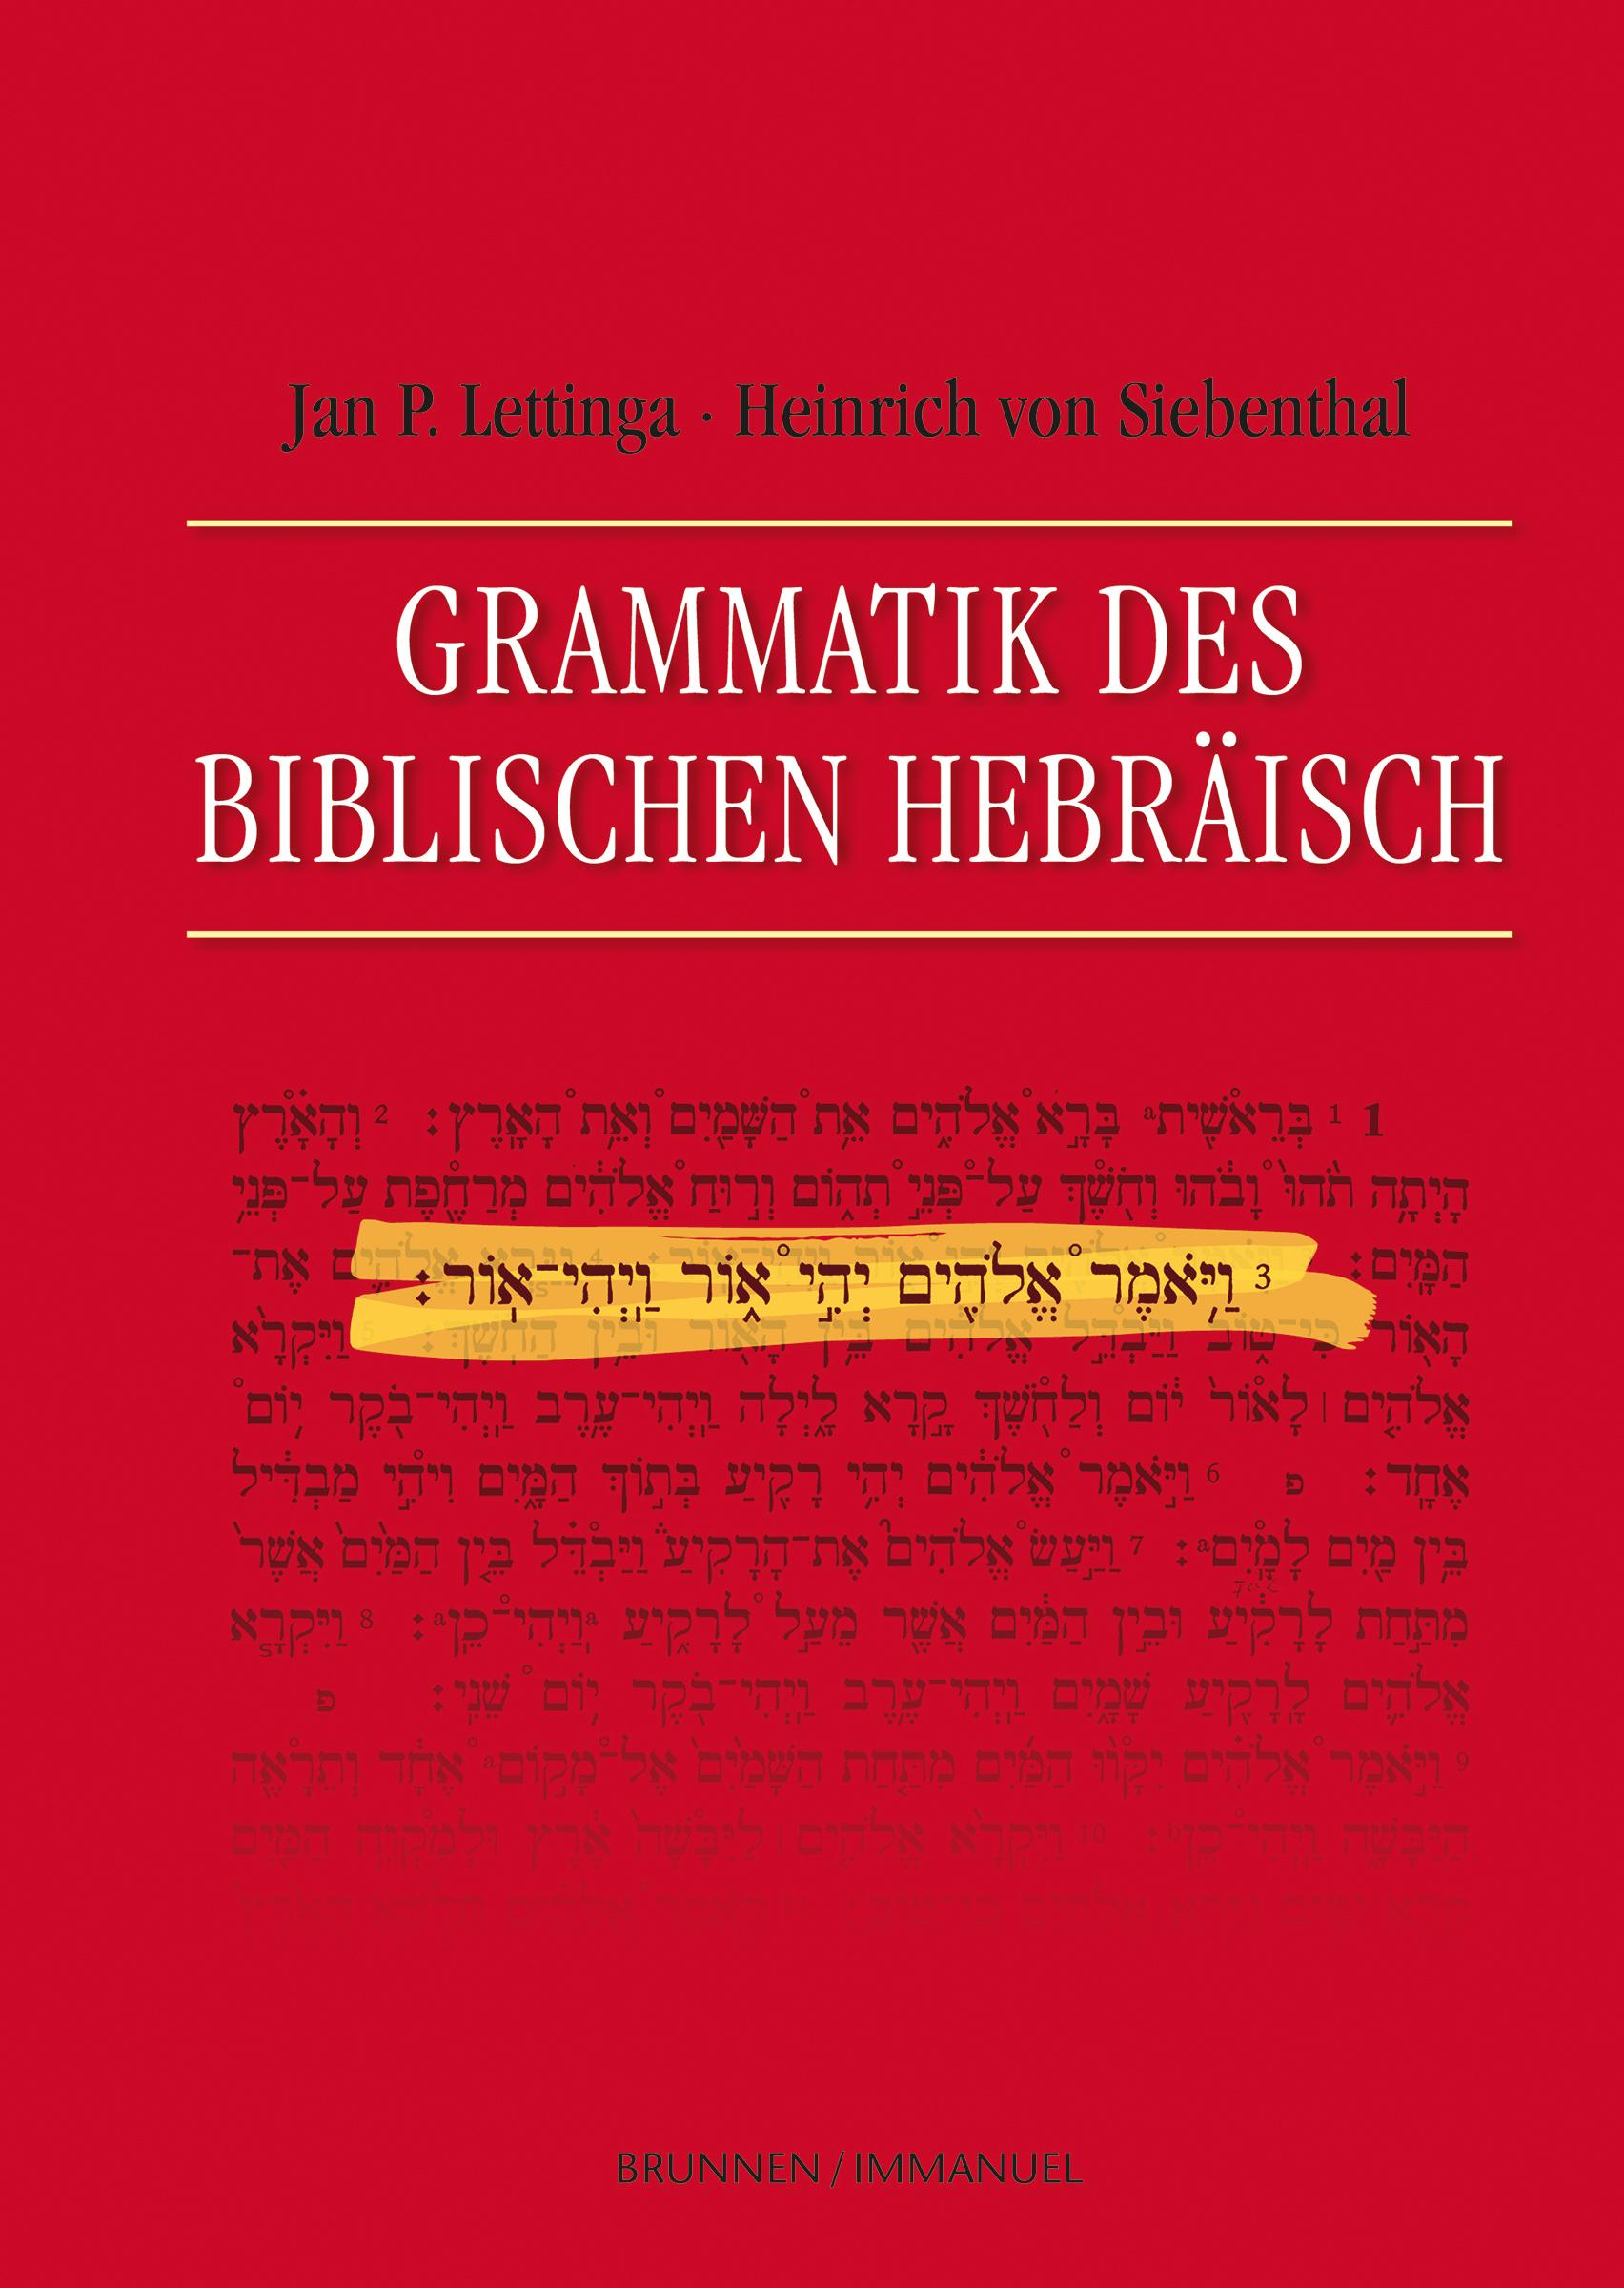 Grammatik des Biblischen Hebraeisch - Jan P. Lettinga, Heinrich von Siebenthal